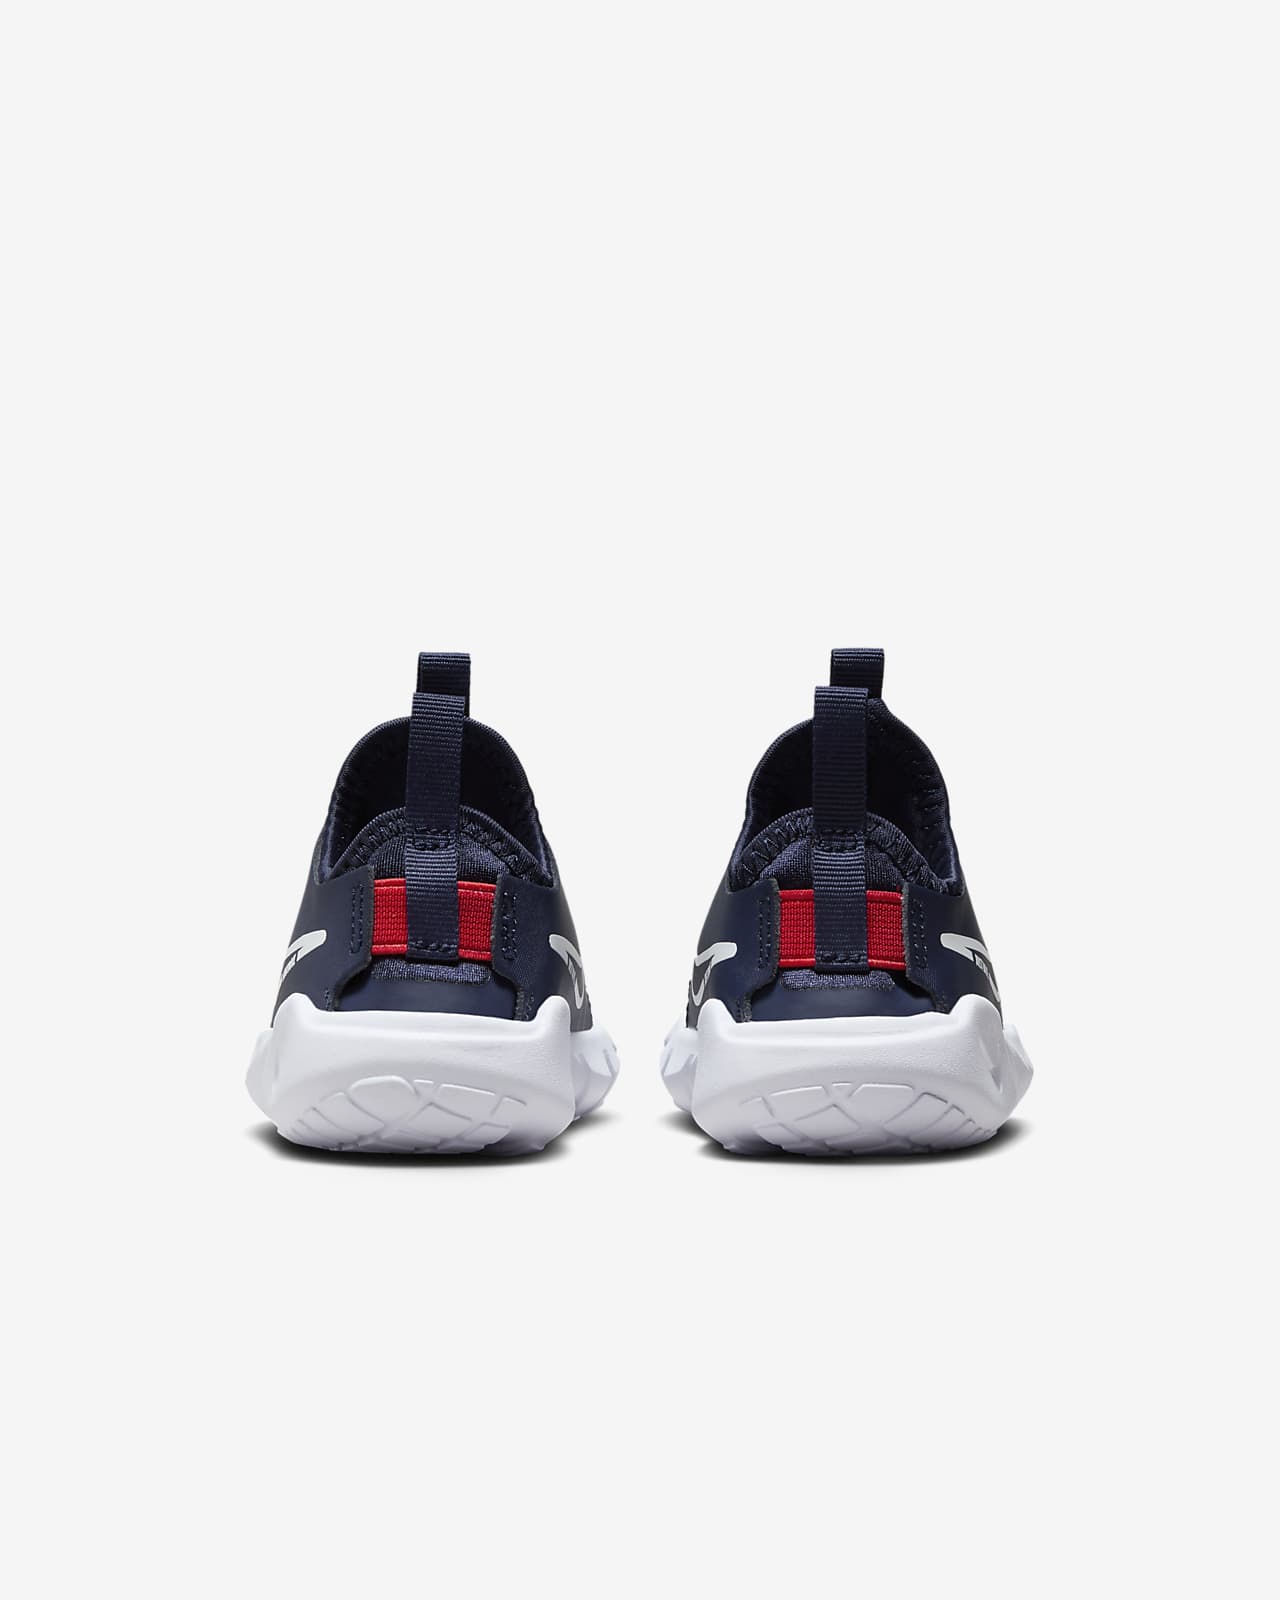 2 Flex Nike Baby/Toddler Shoes. Runner